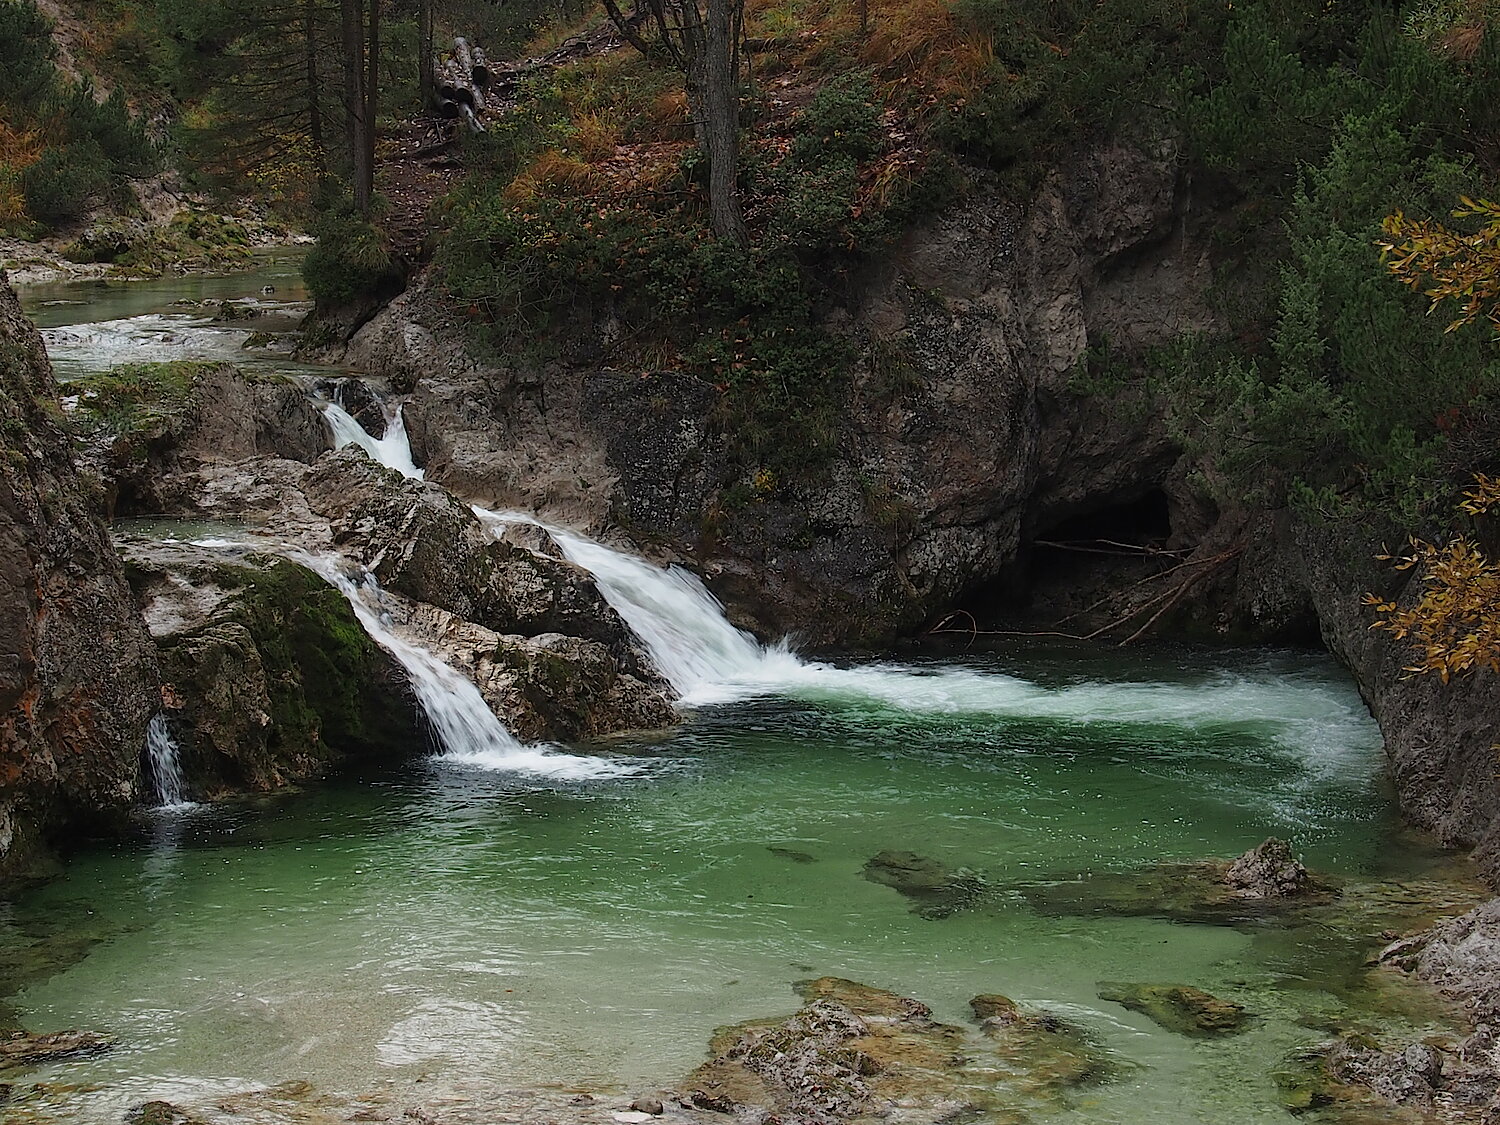 Wasserbecken im Naturpark Ötscher-Tormäuer in Niederösterreich